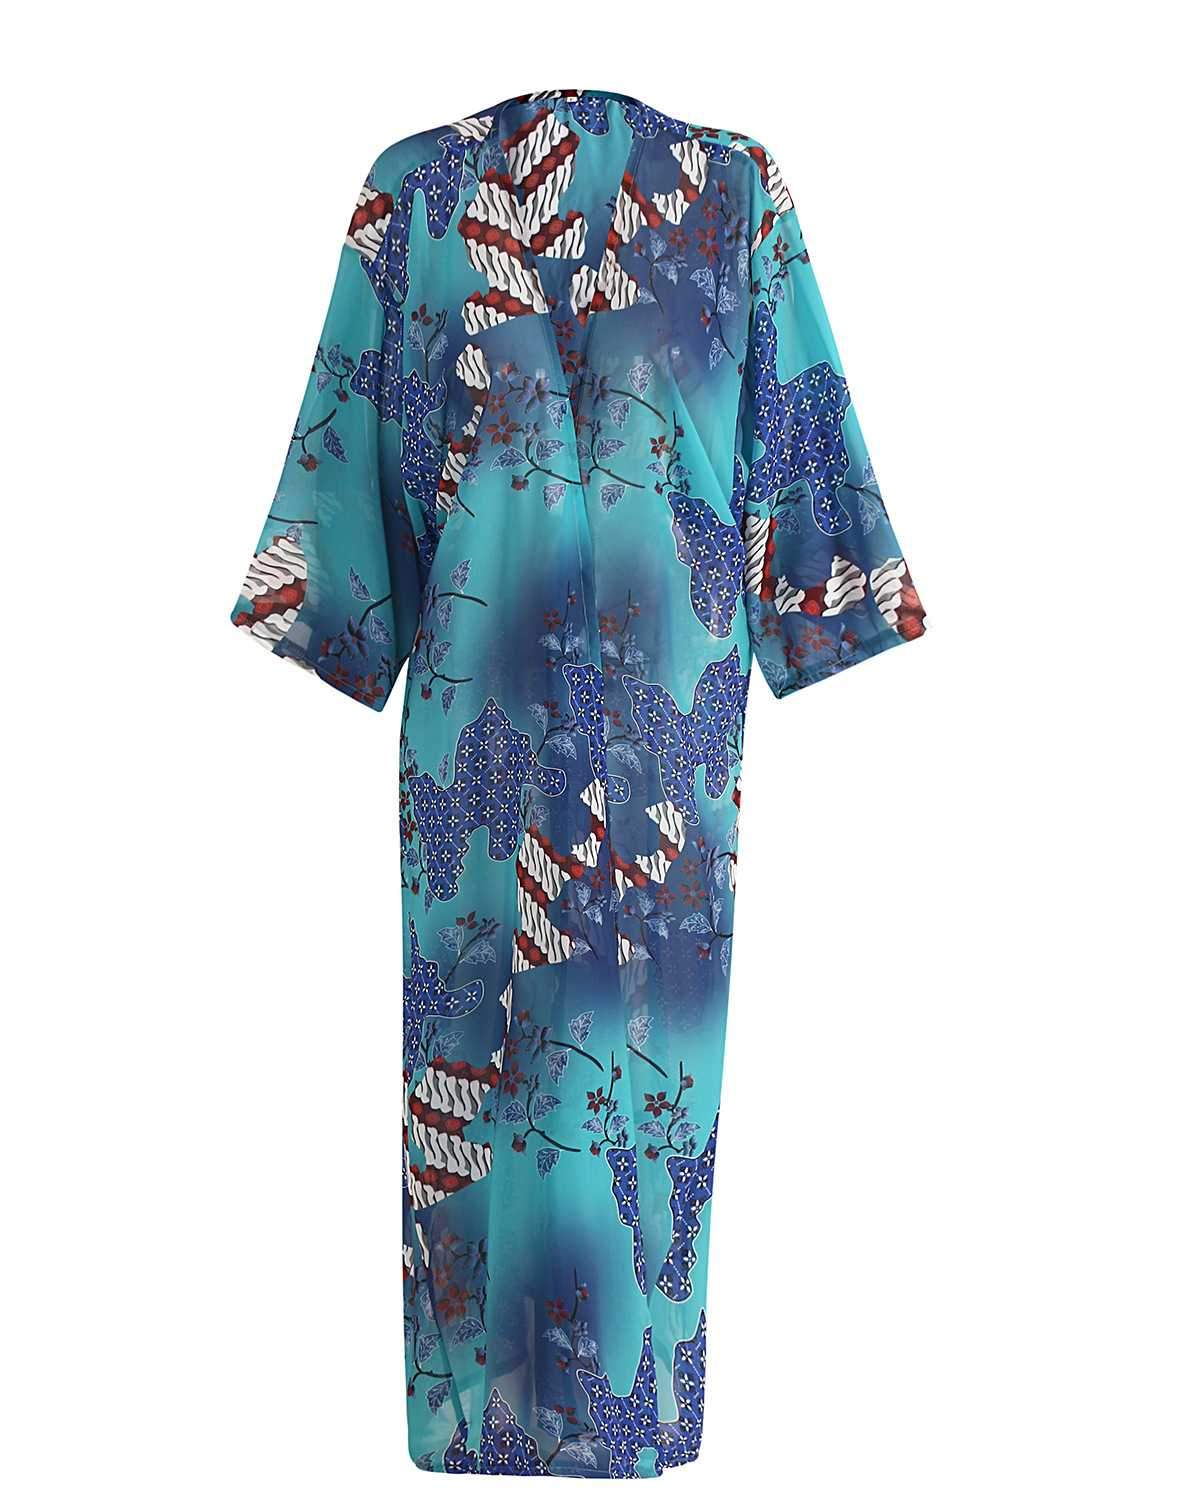 Retro Floral Coverups Dress Beach Wear Kimono